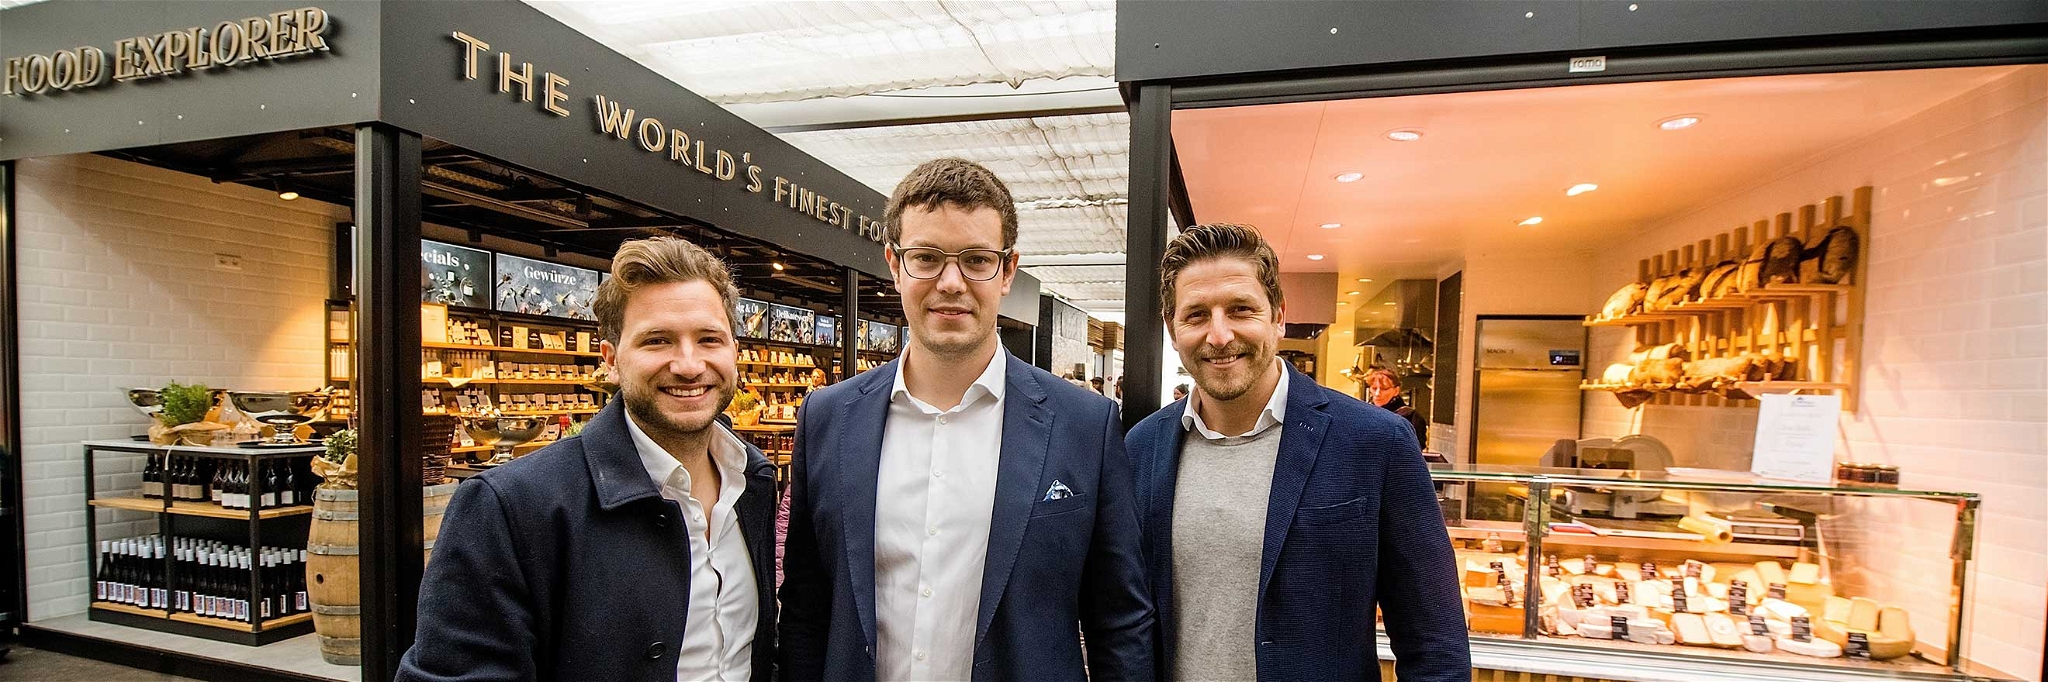 Die drei Geschäftsführer Food Explorer: Alessandro Causarano, Tobias Thüner und Sebastian Labud (v.l.)